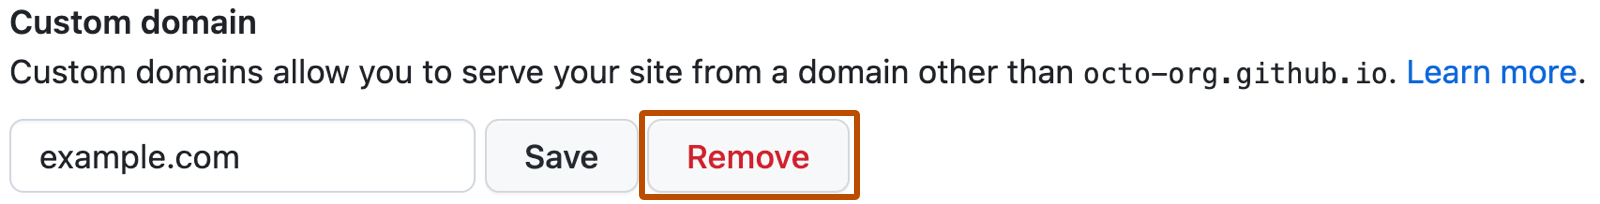 Save custom domain button